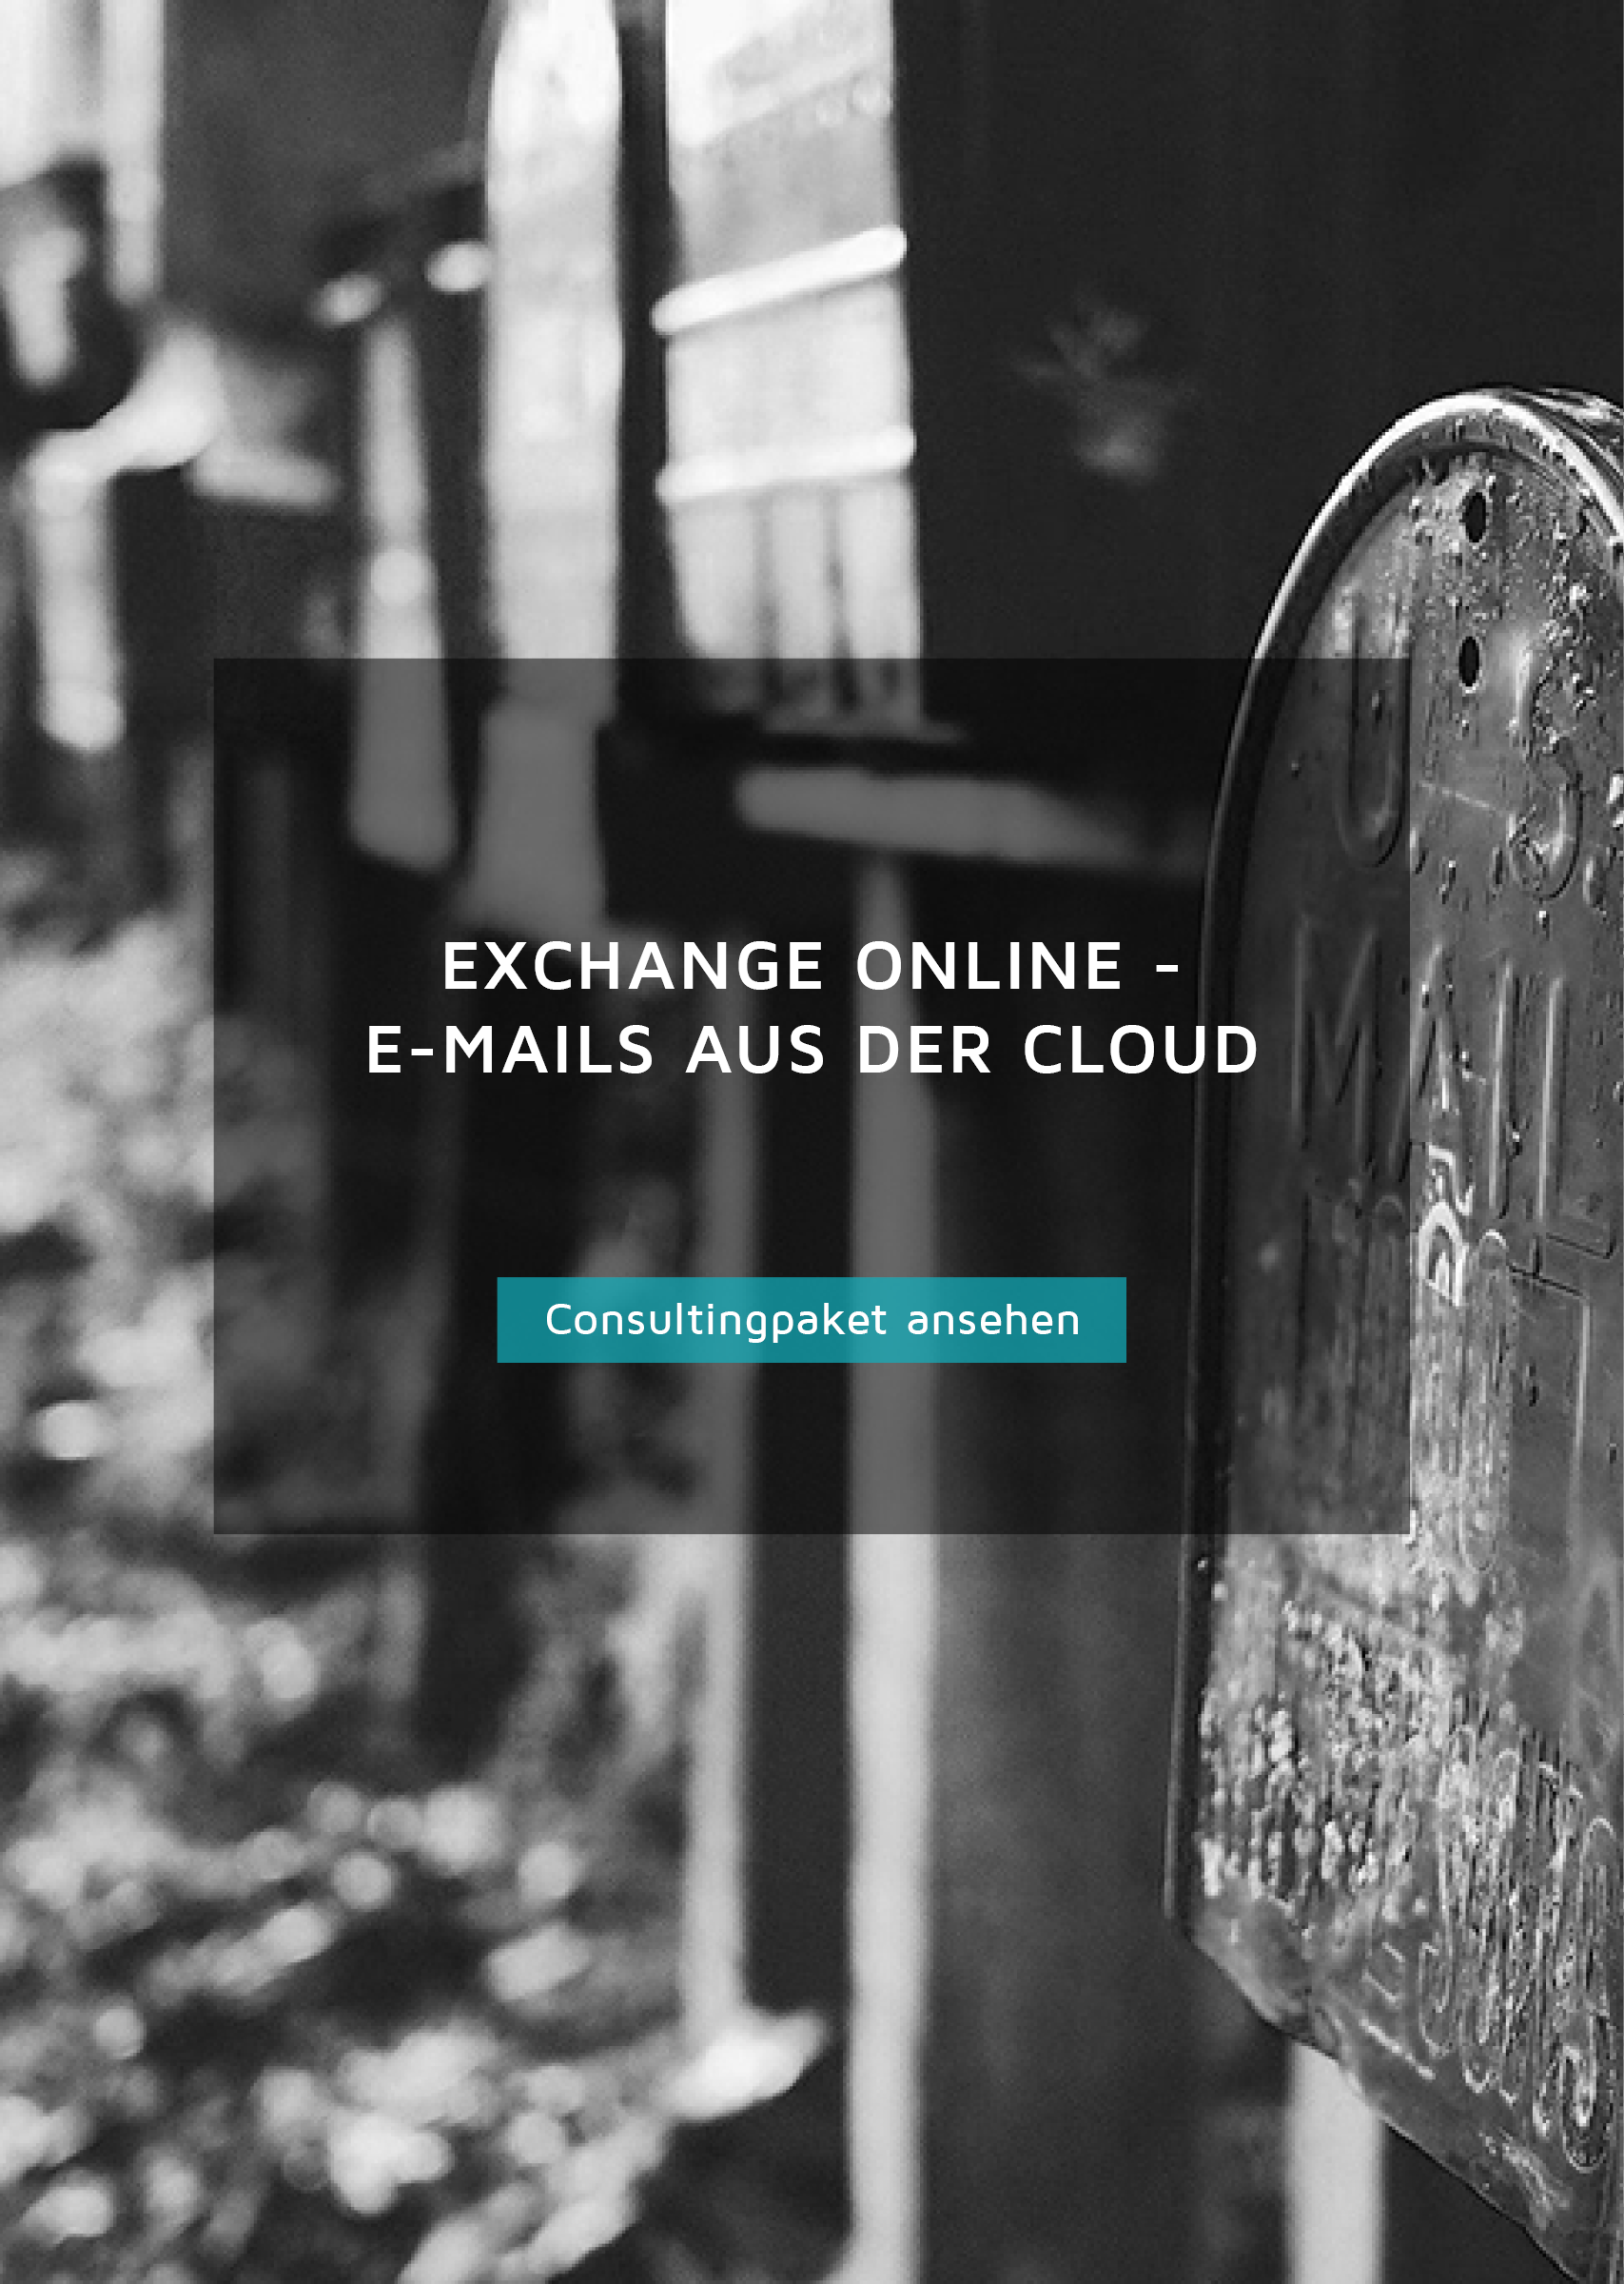 Consultingpaket für Exchange online, E-Mails aus der Cloud, Button